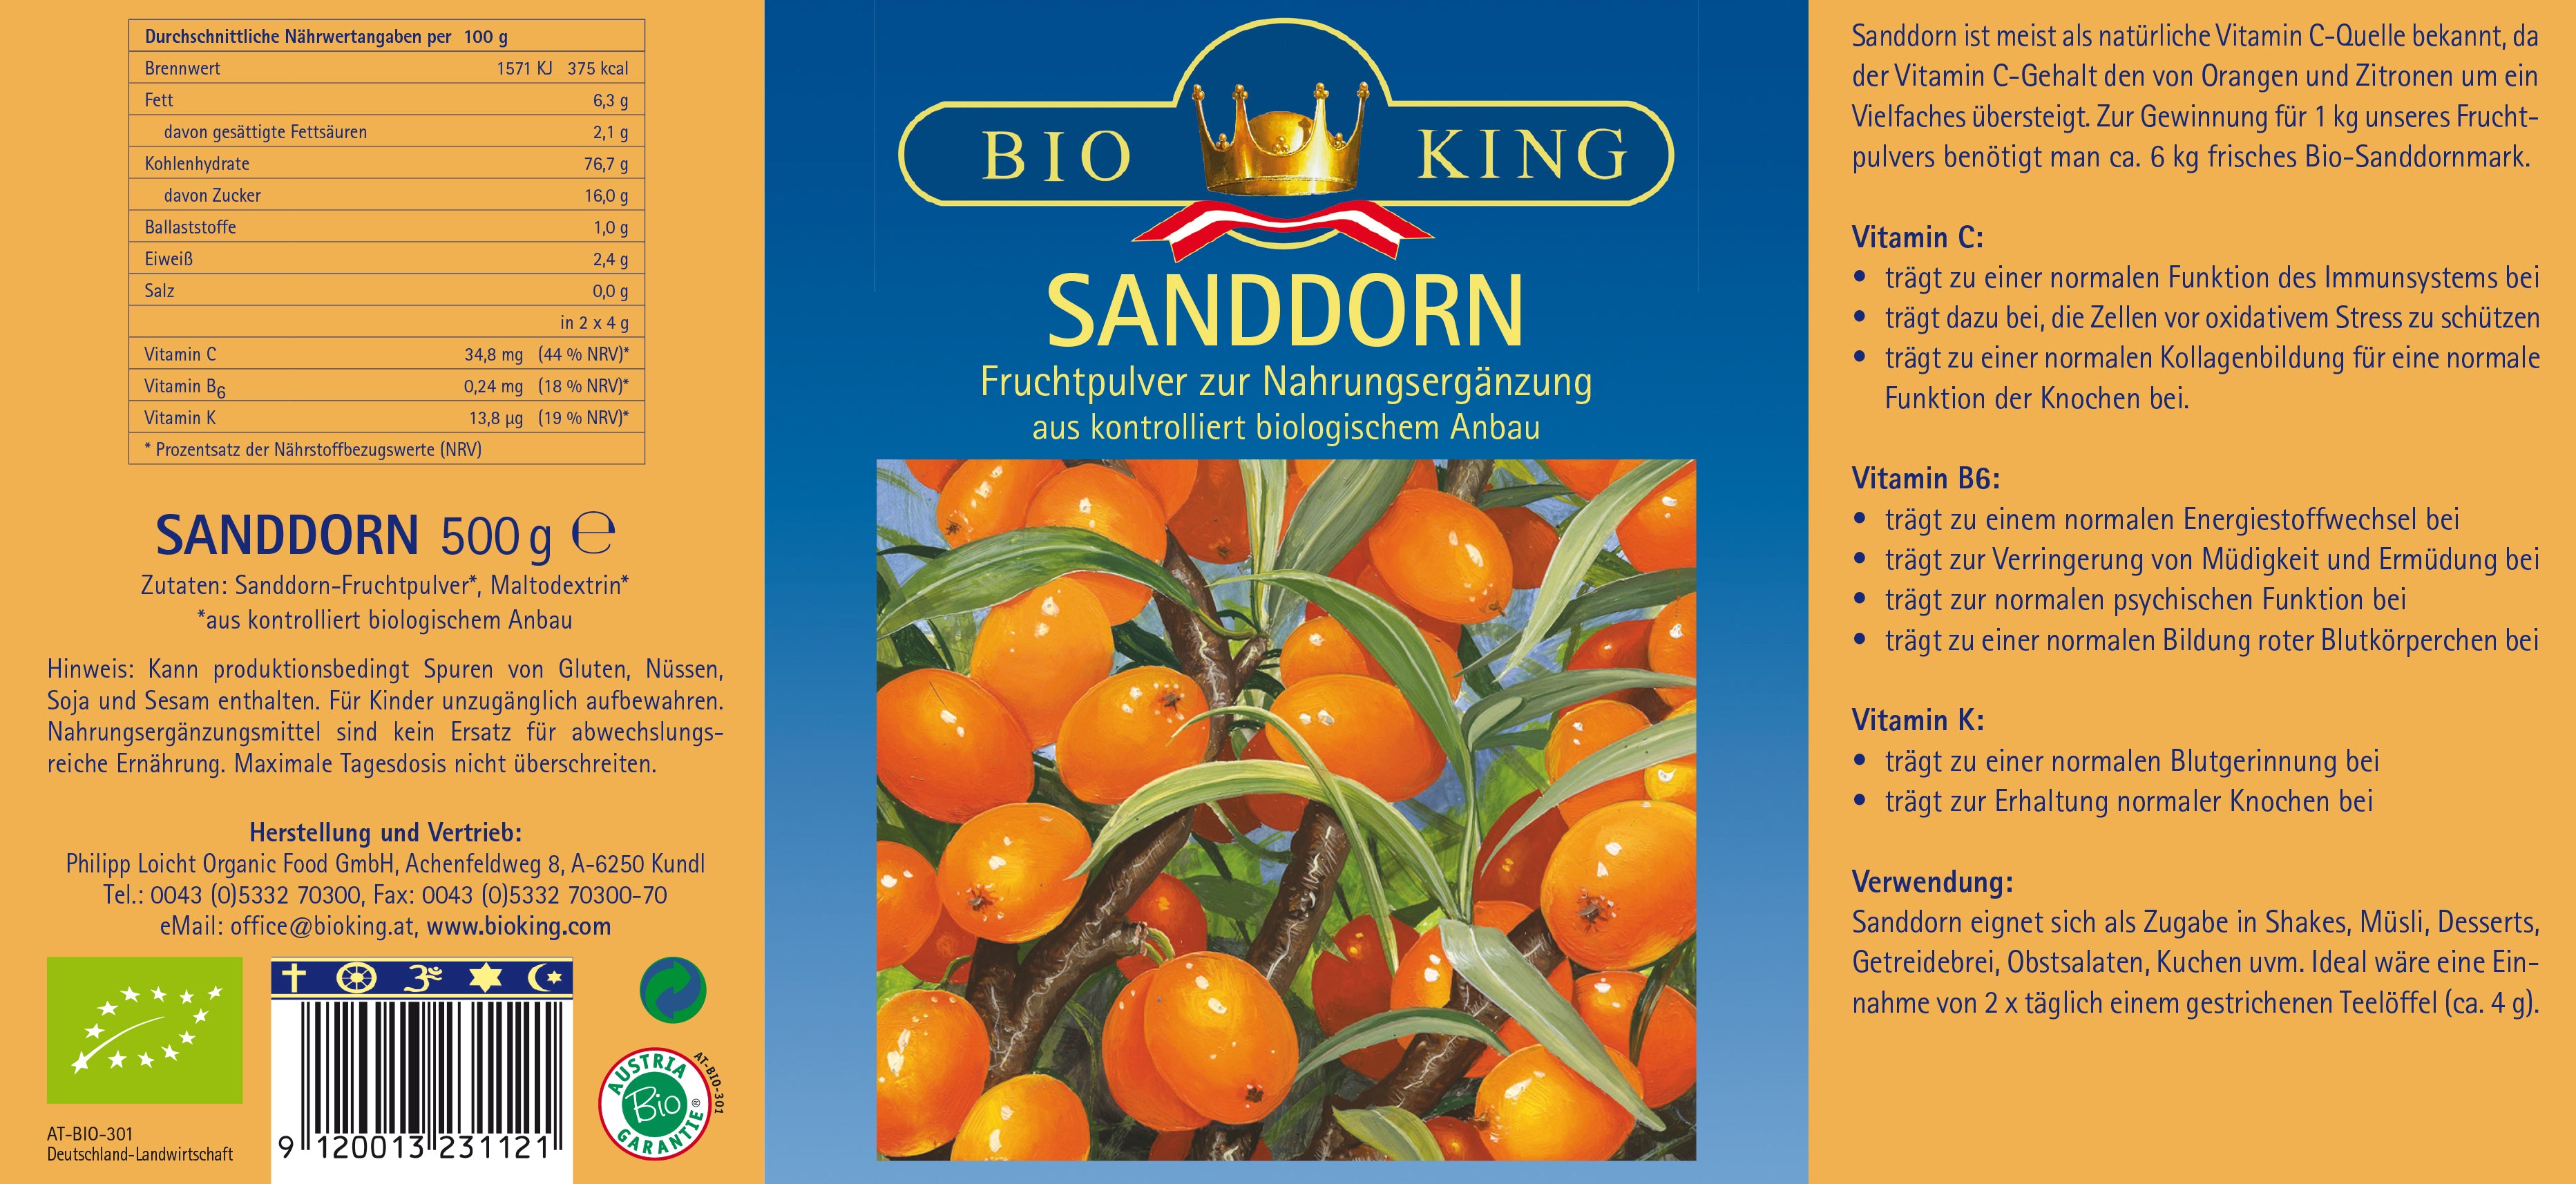 Bio SANDDORN, Fruchtpulver